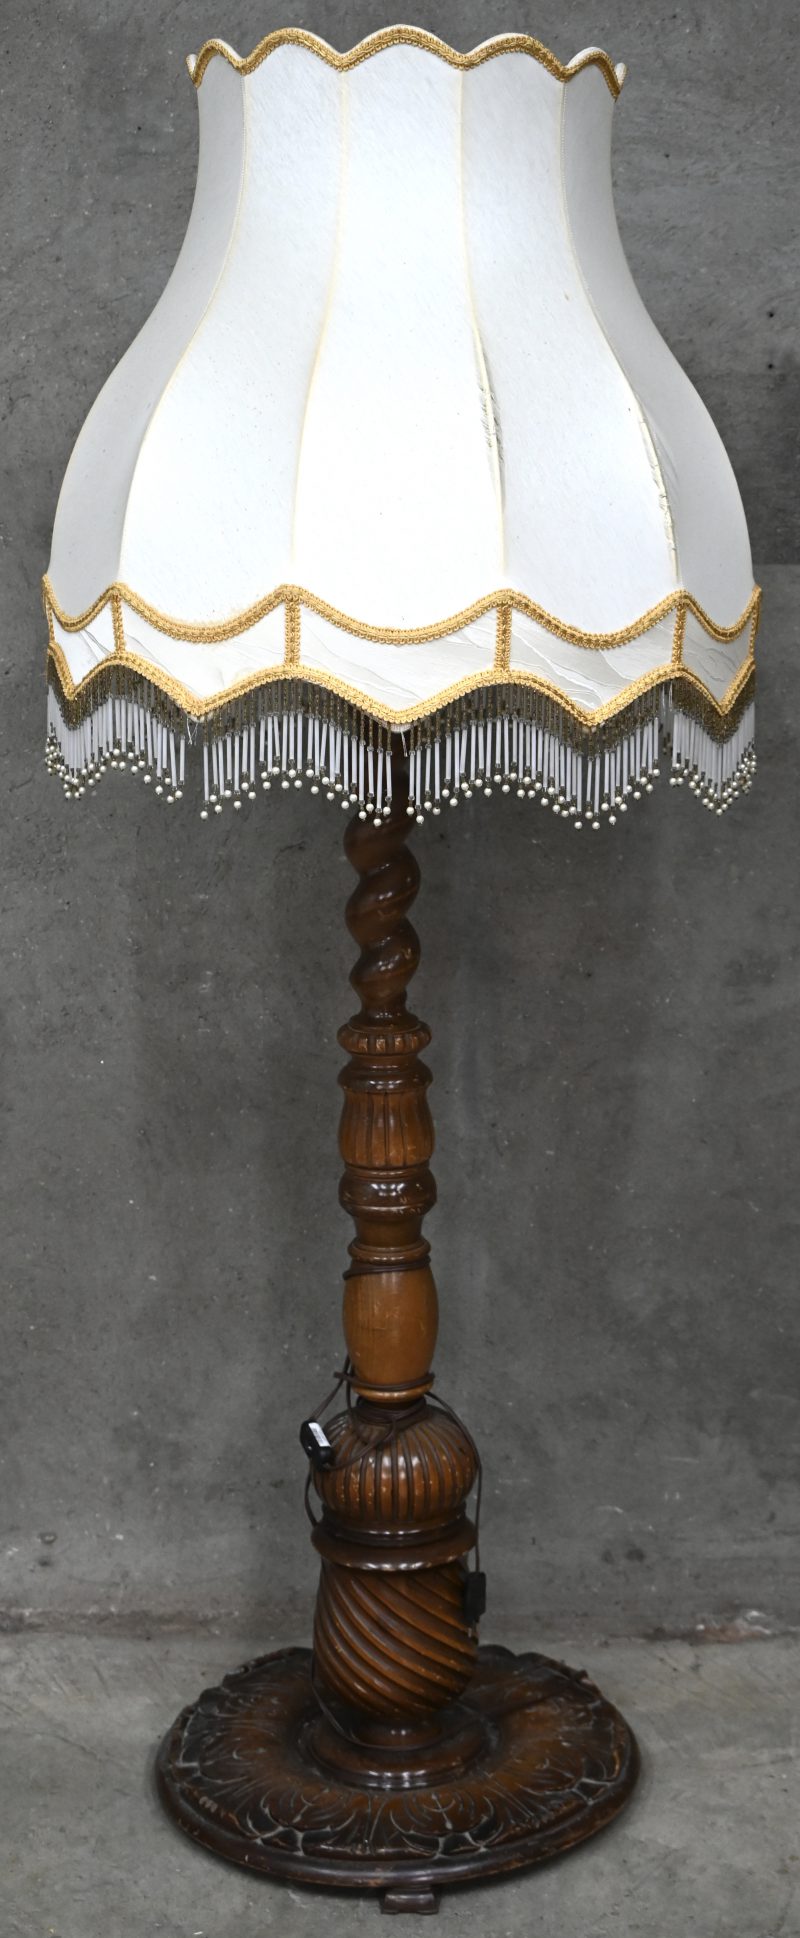 Een een hout gesculpteerde staande lamp met gedraaide arm en grote kap.